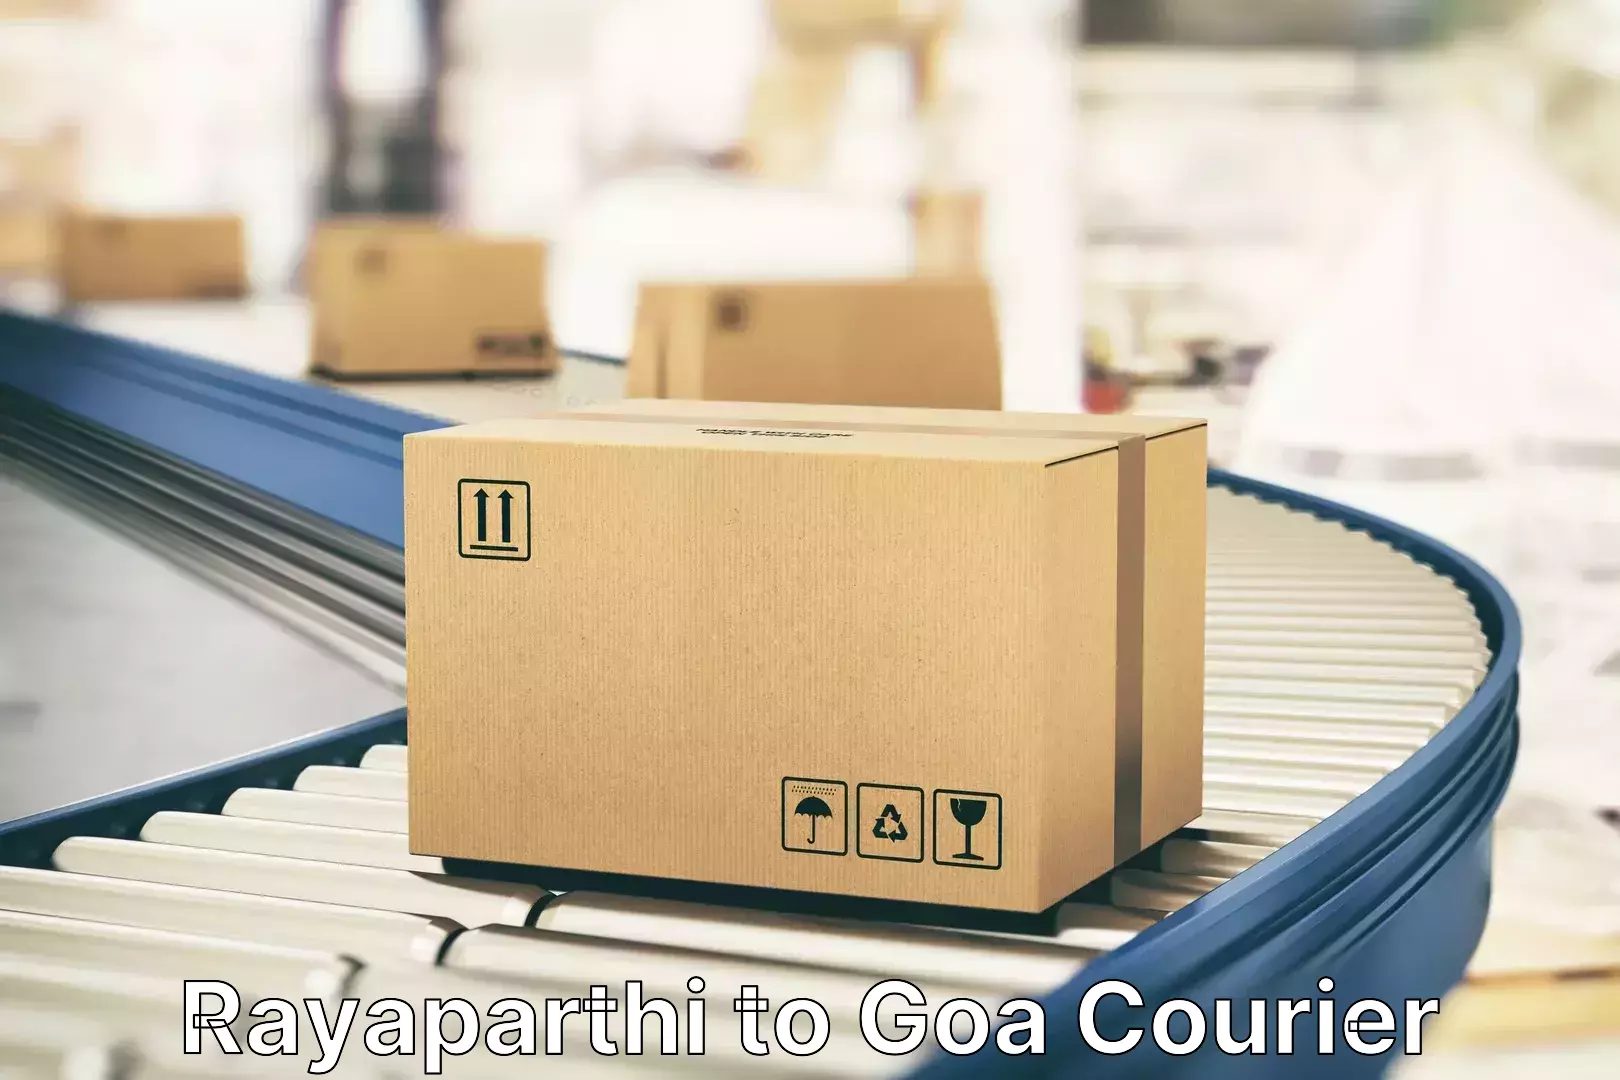 Urgent luggage shipment Rayaparthi to NIT Goa